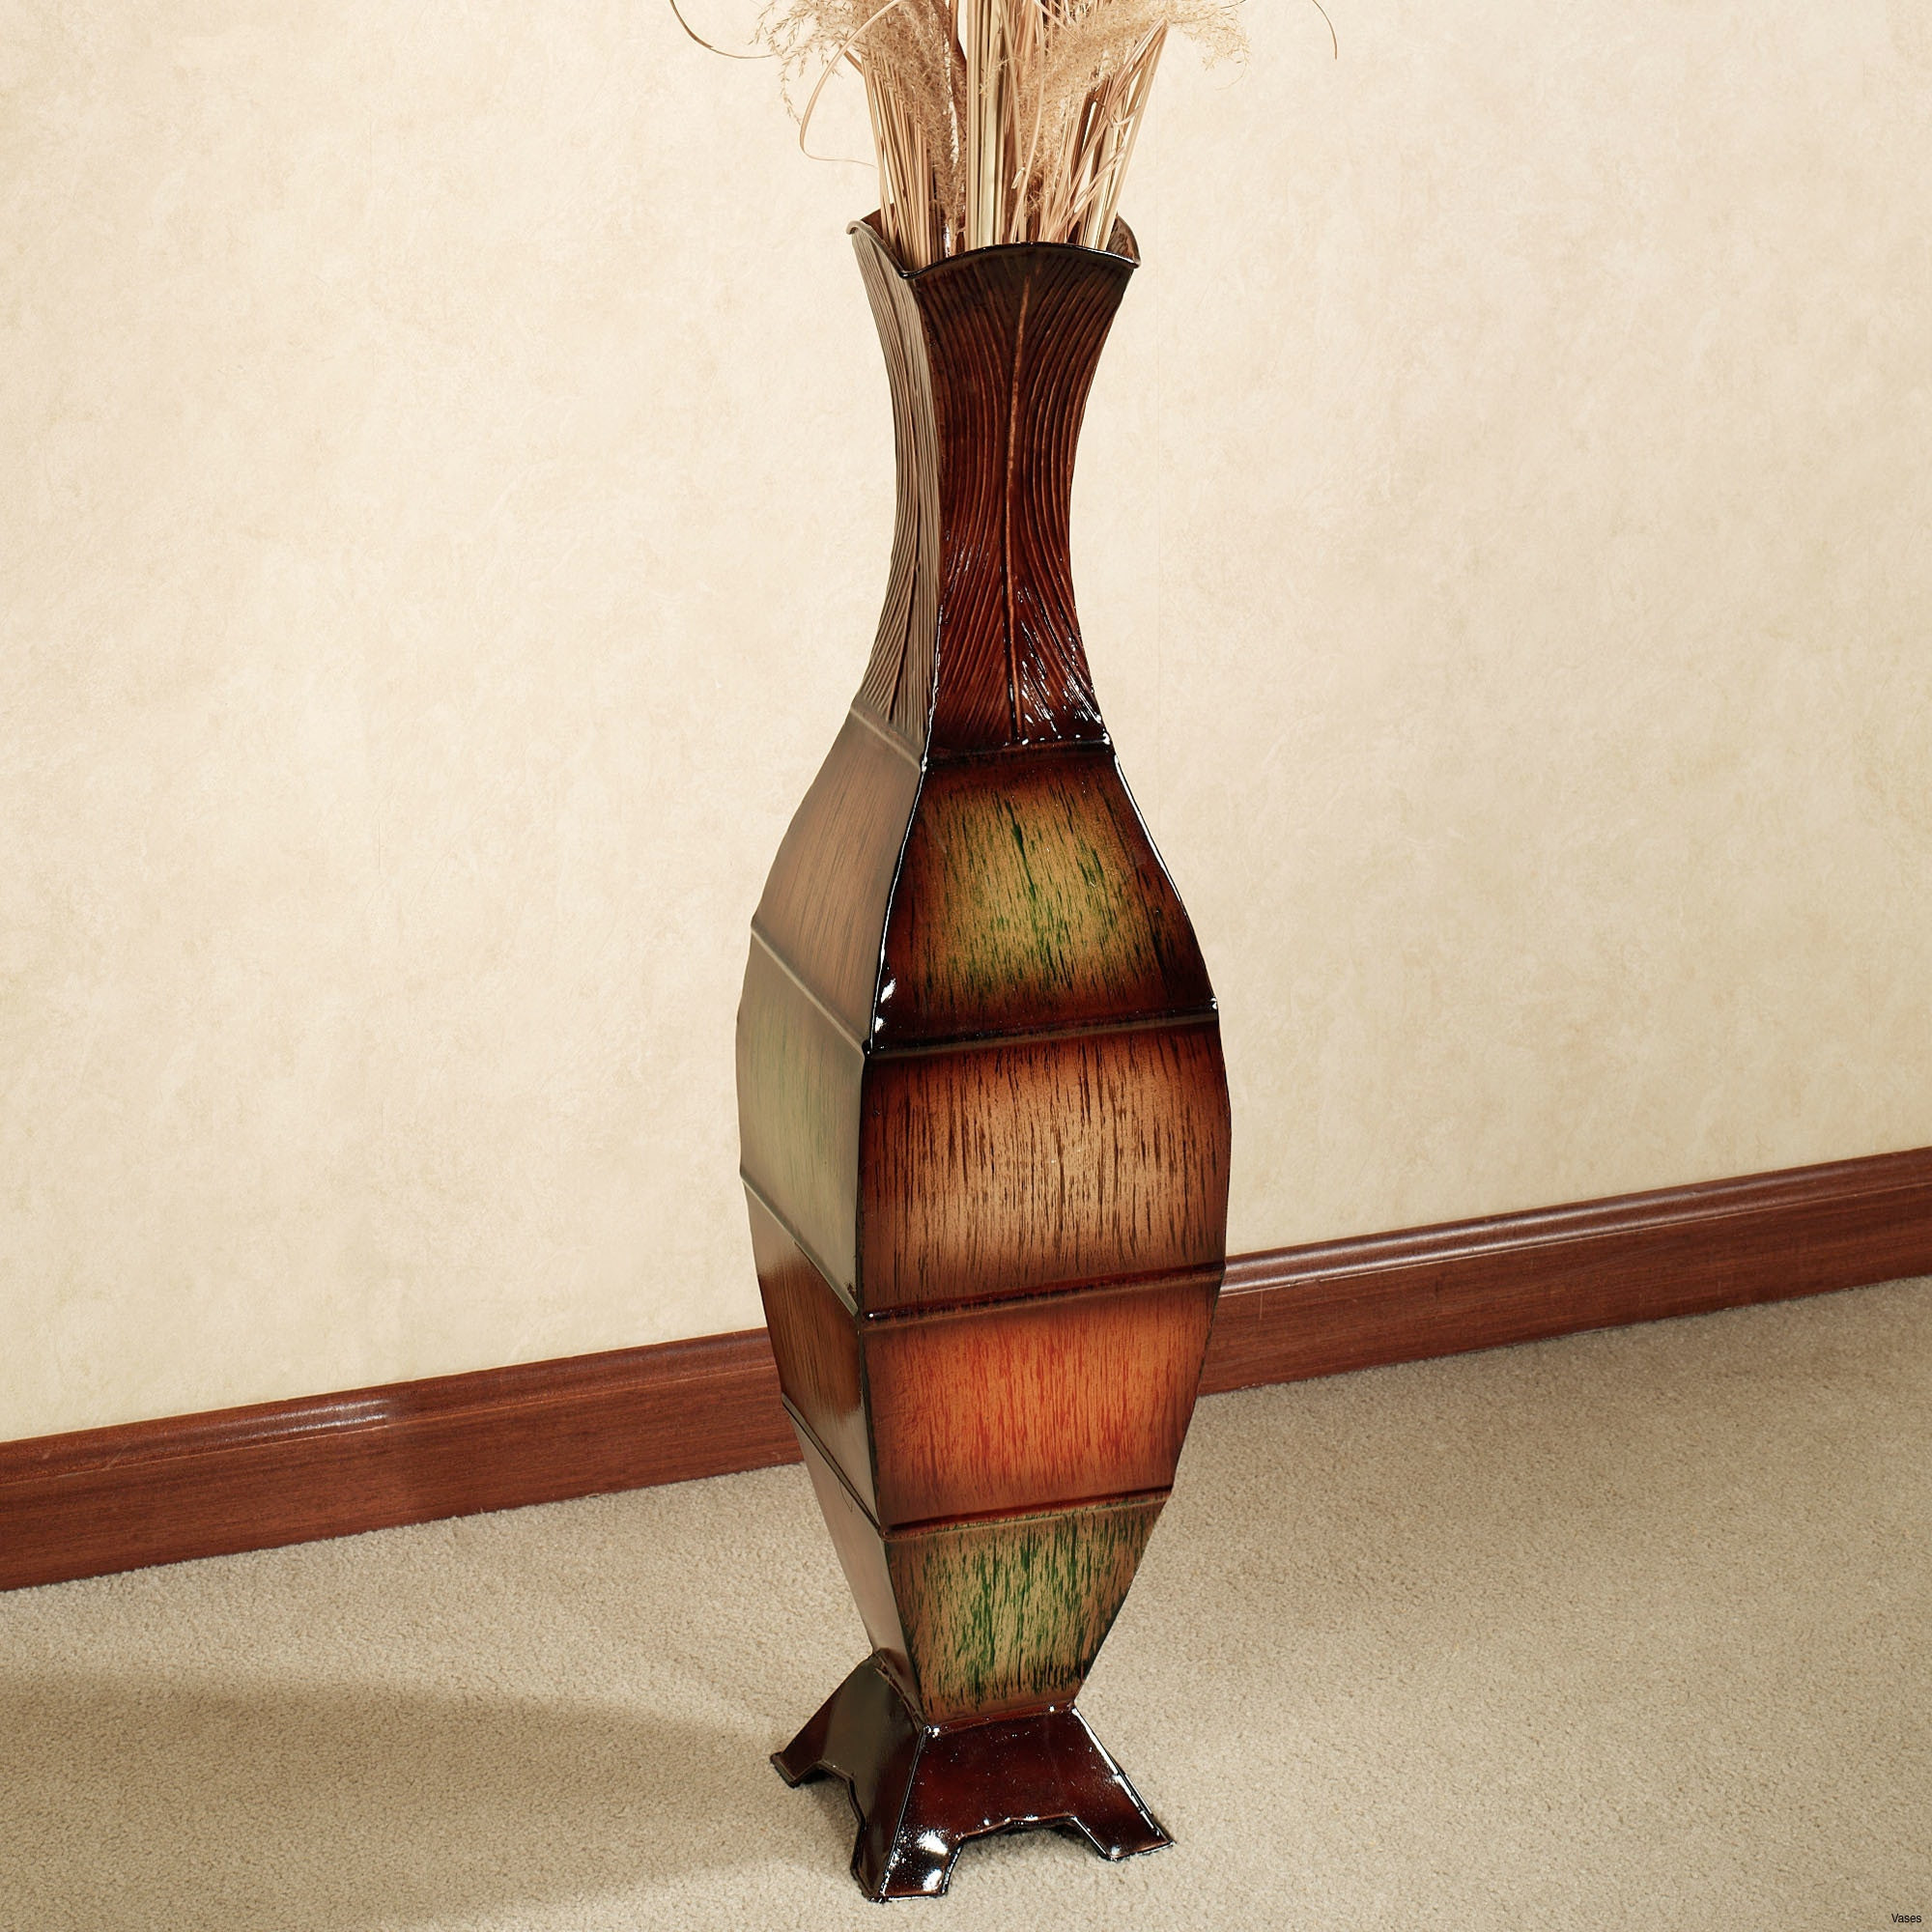 Glass Pineapple Vase Of 10 Best Of Bamboo Vase Bogekompresorturkiye Com within Lamps Floor Contemporary New Luxury Contemporary Floor Vasesh Vases Cheap Vasesi 5d Bamboo Lamps Floor